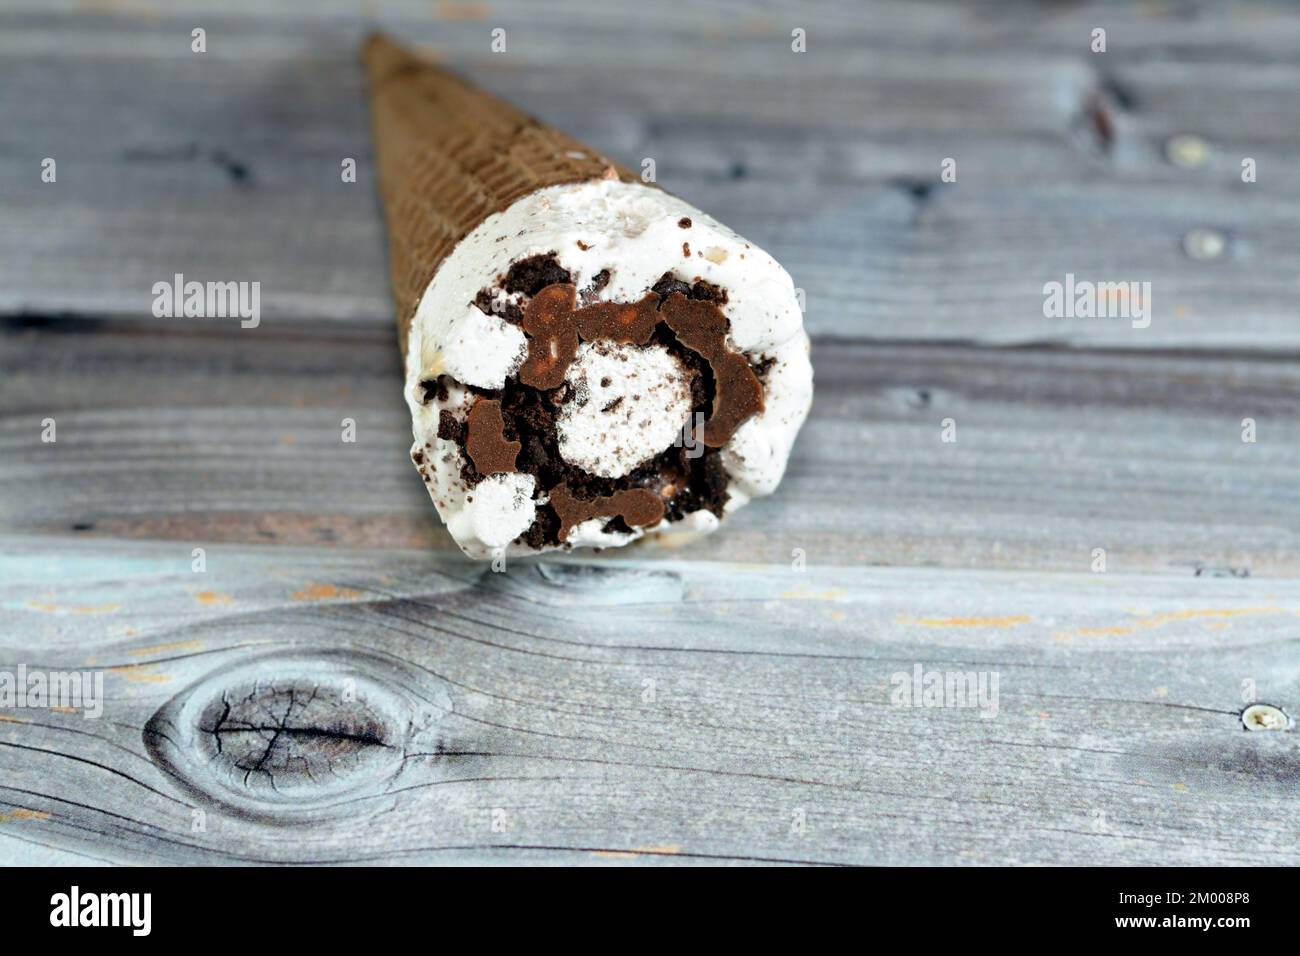 Cône de vanille à la crème glacée avec garniture de morceaux de copeaux de chocolat dans des cônes de cachets croustillants, foyer sélectif de la fusion de la crème glacée froide dans un bisc de cachets Banque D'Images